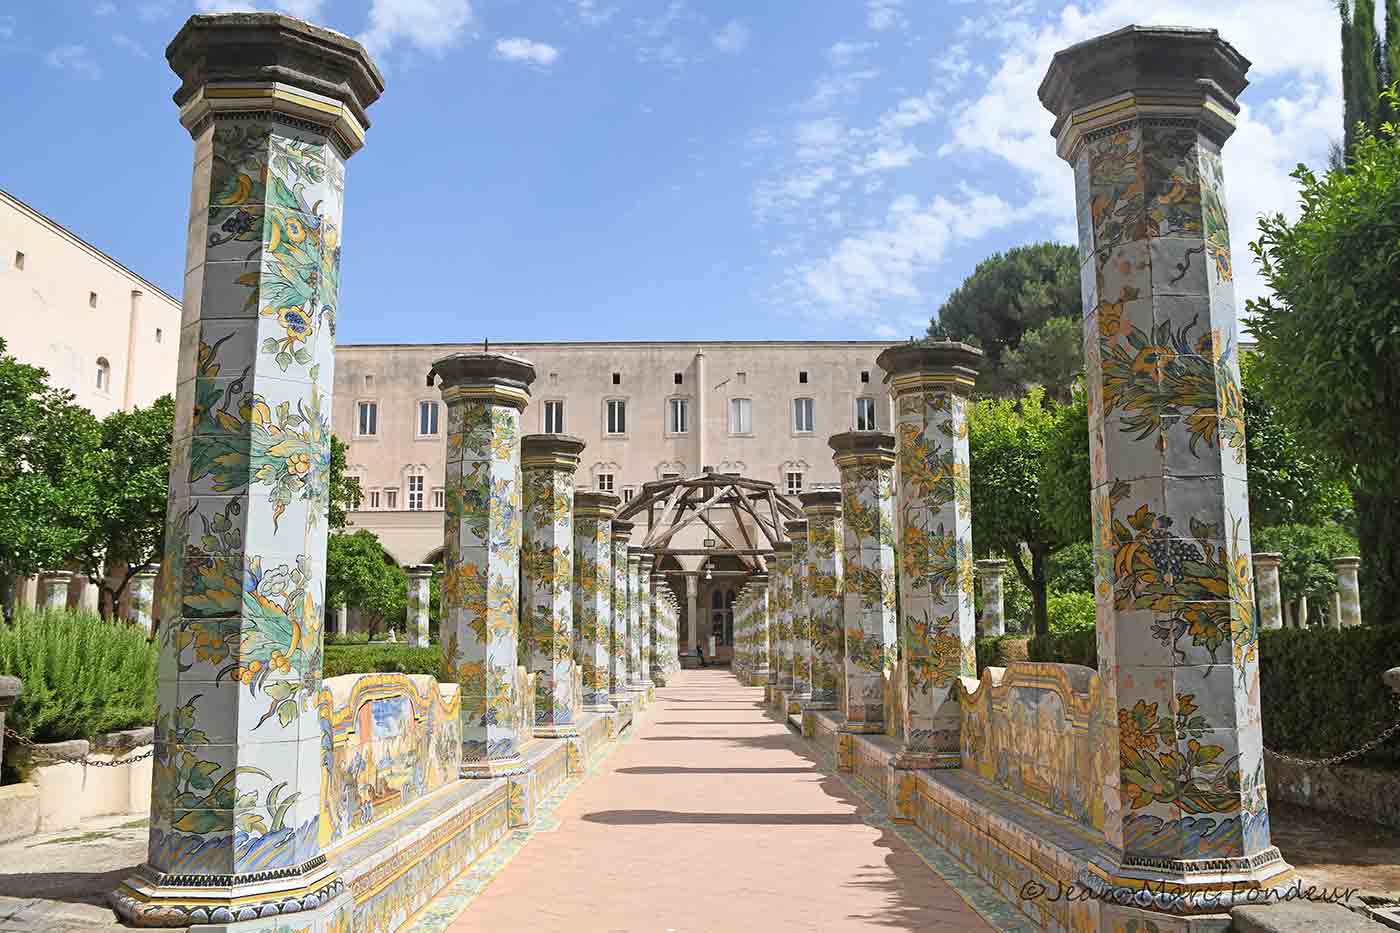 Museum Complex of Santa Chiara